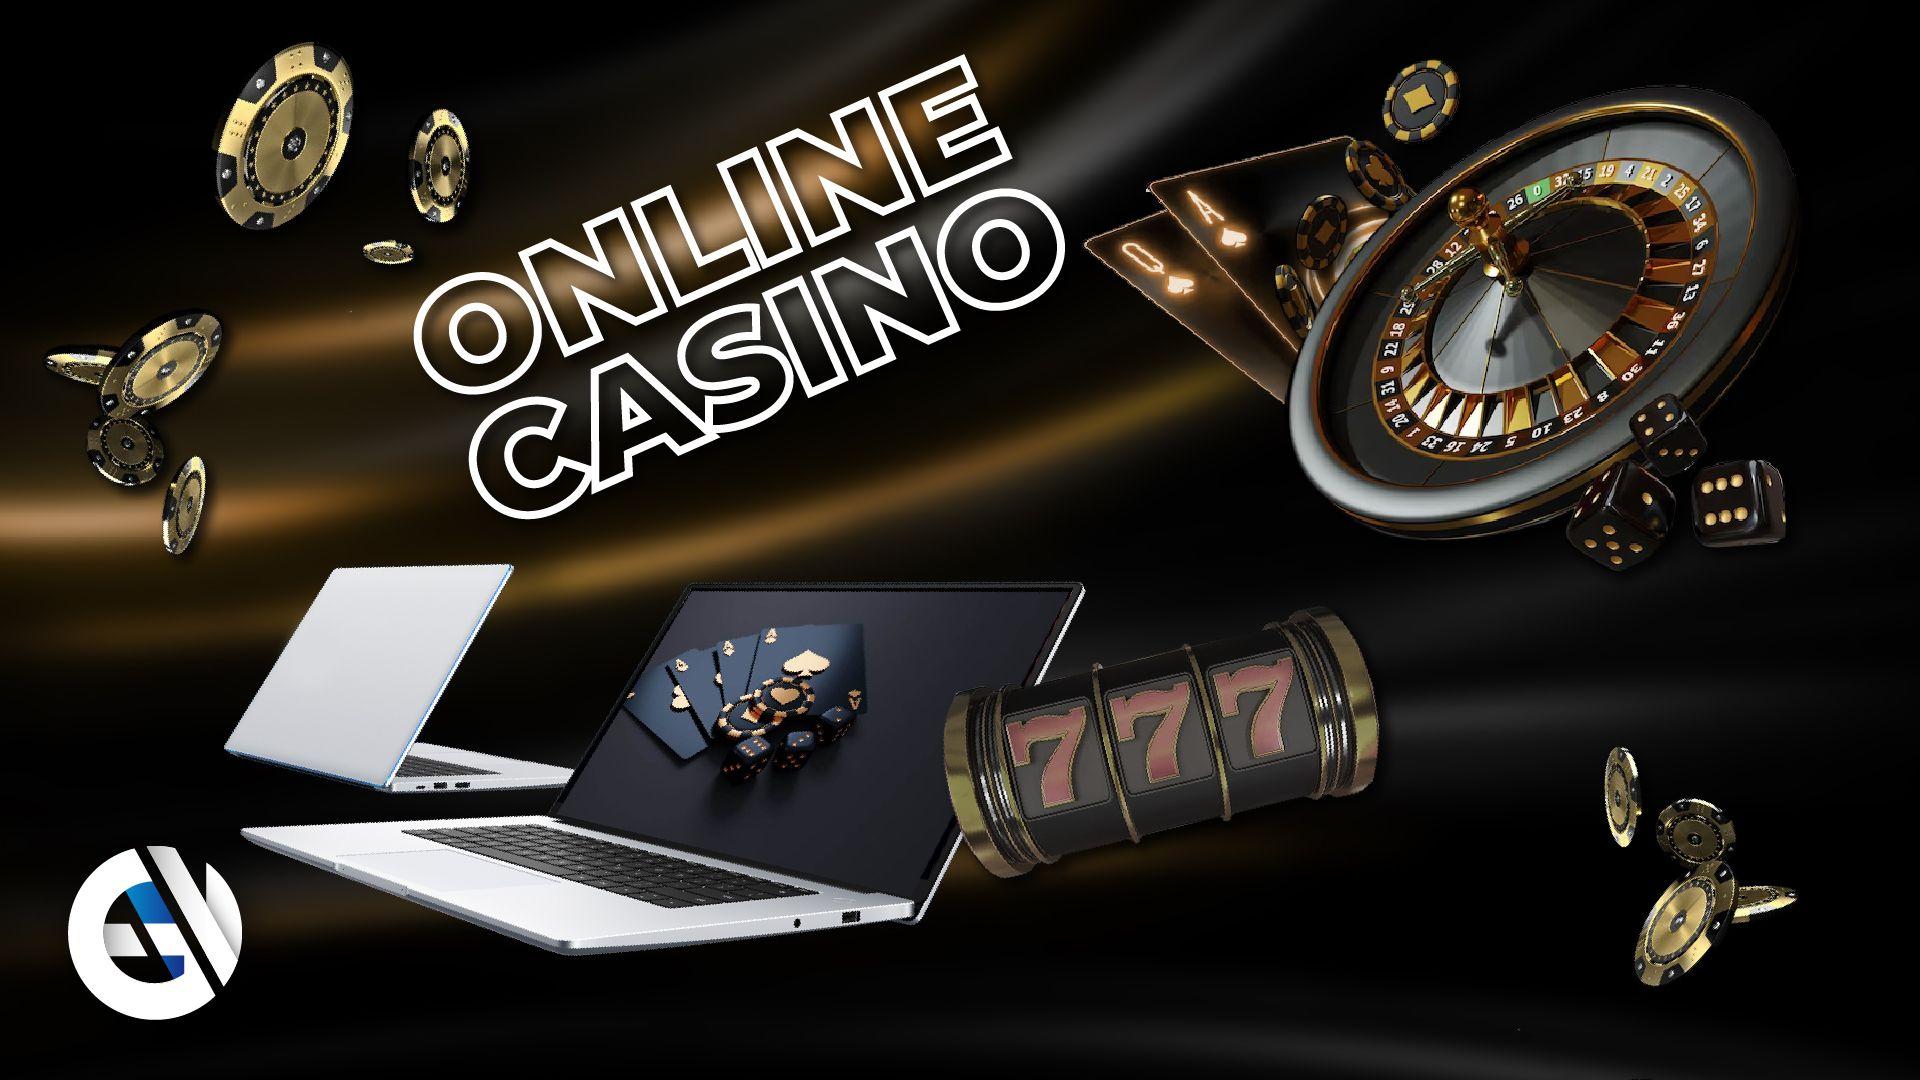 Jogos de Casino Online Gratis